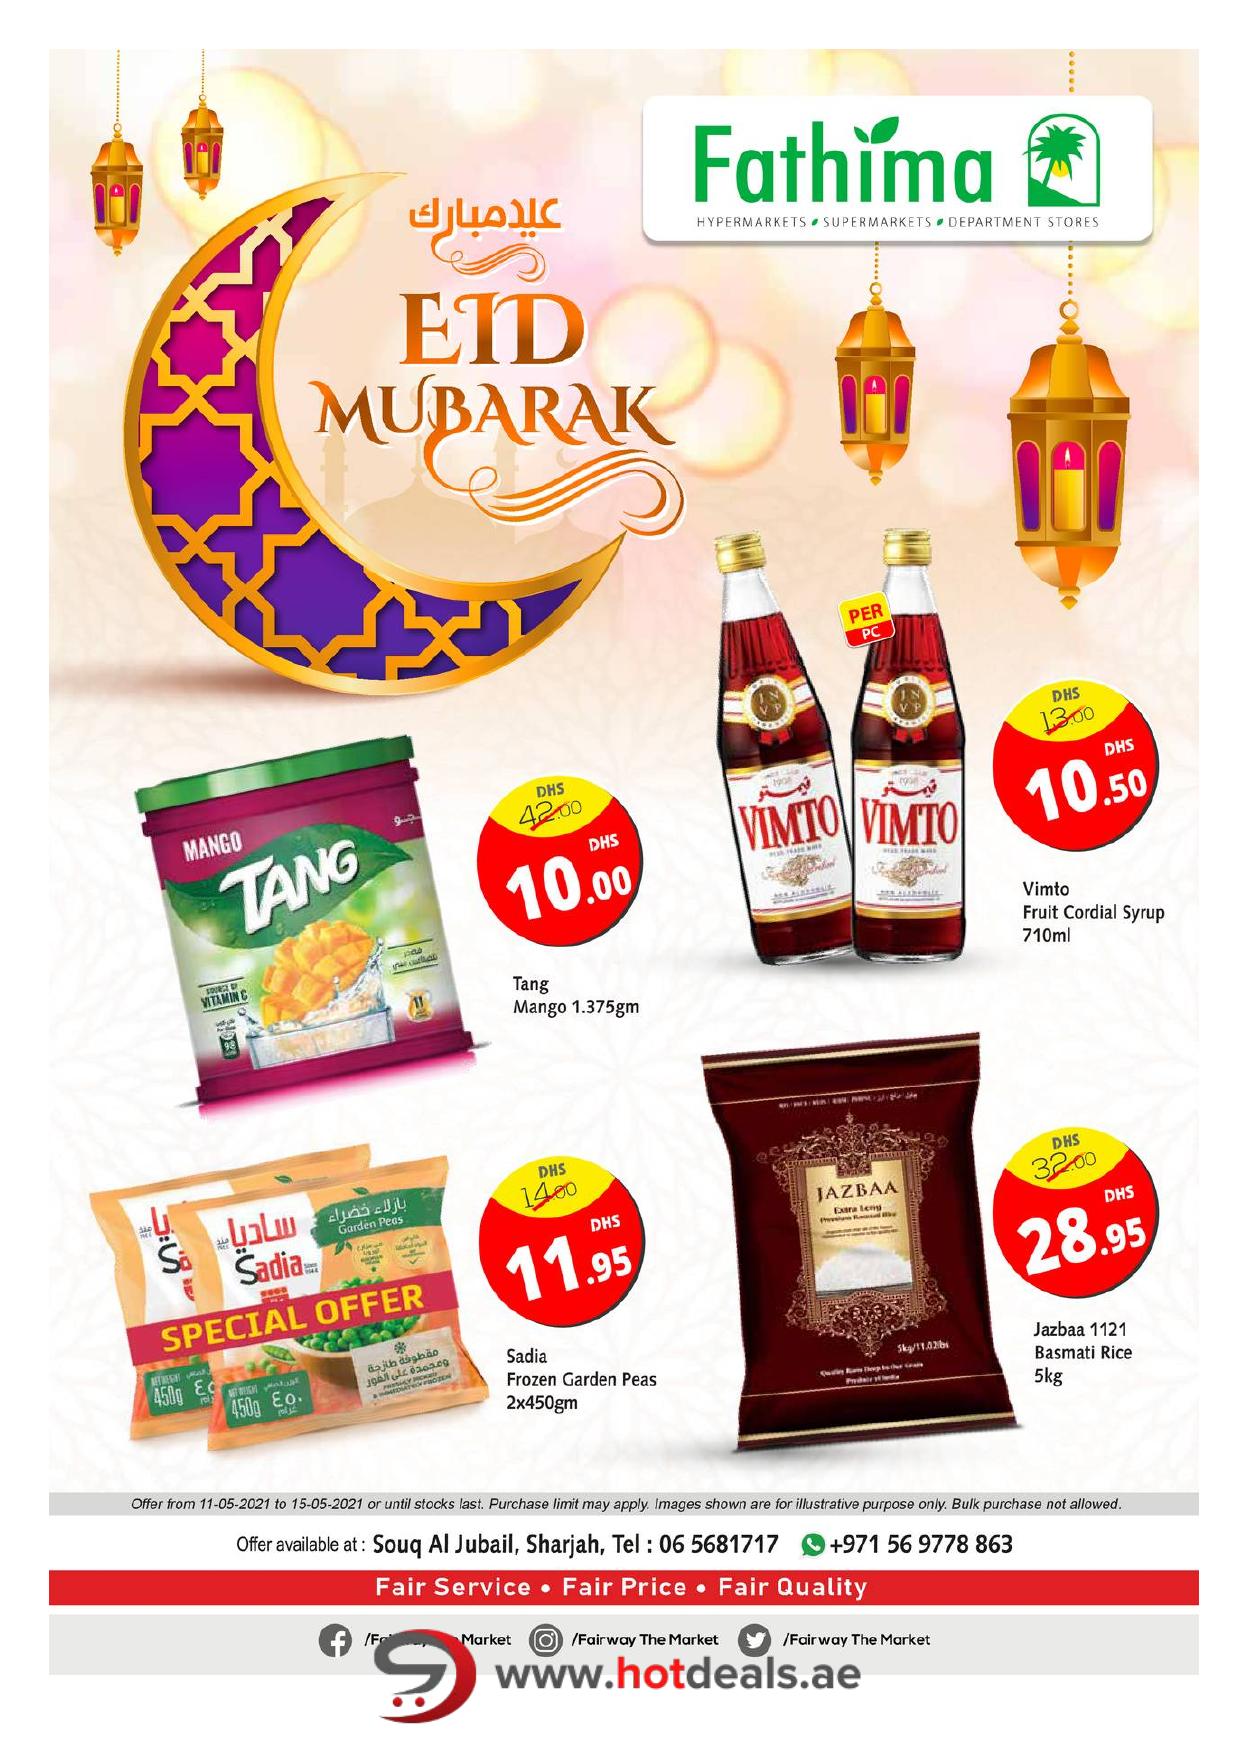 <p><span style="font-size: 18px;"><font color="#424242">Eid Deals - Fairway The Market, Souq Al Jubail</font></span><br></p>